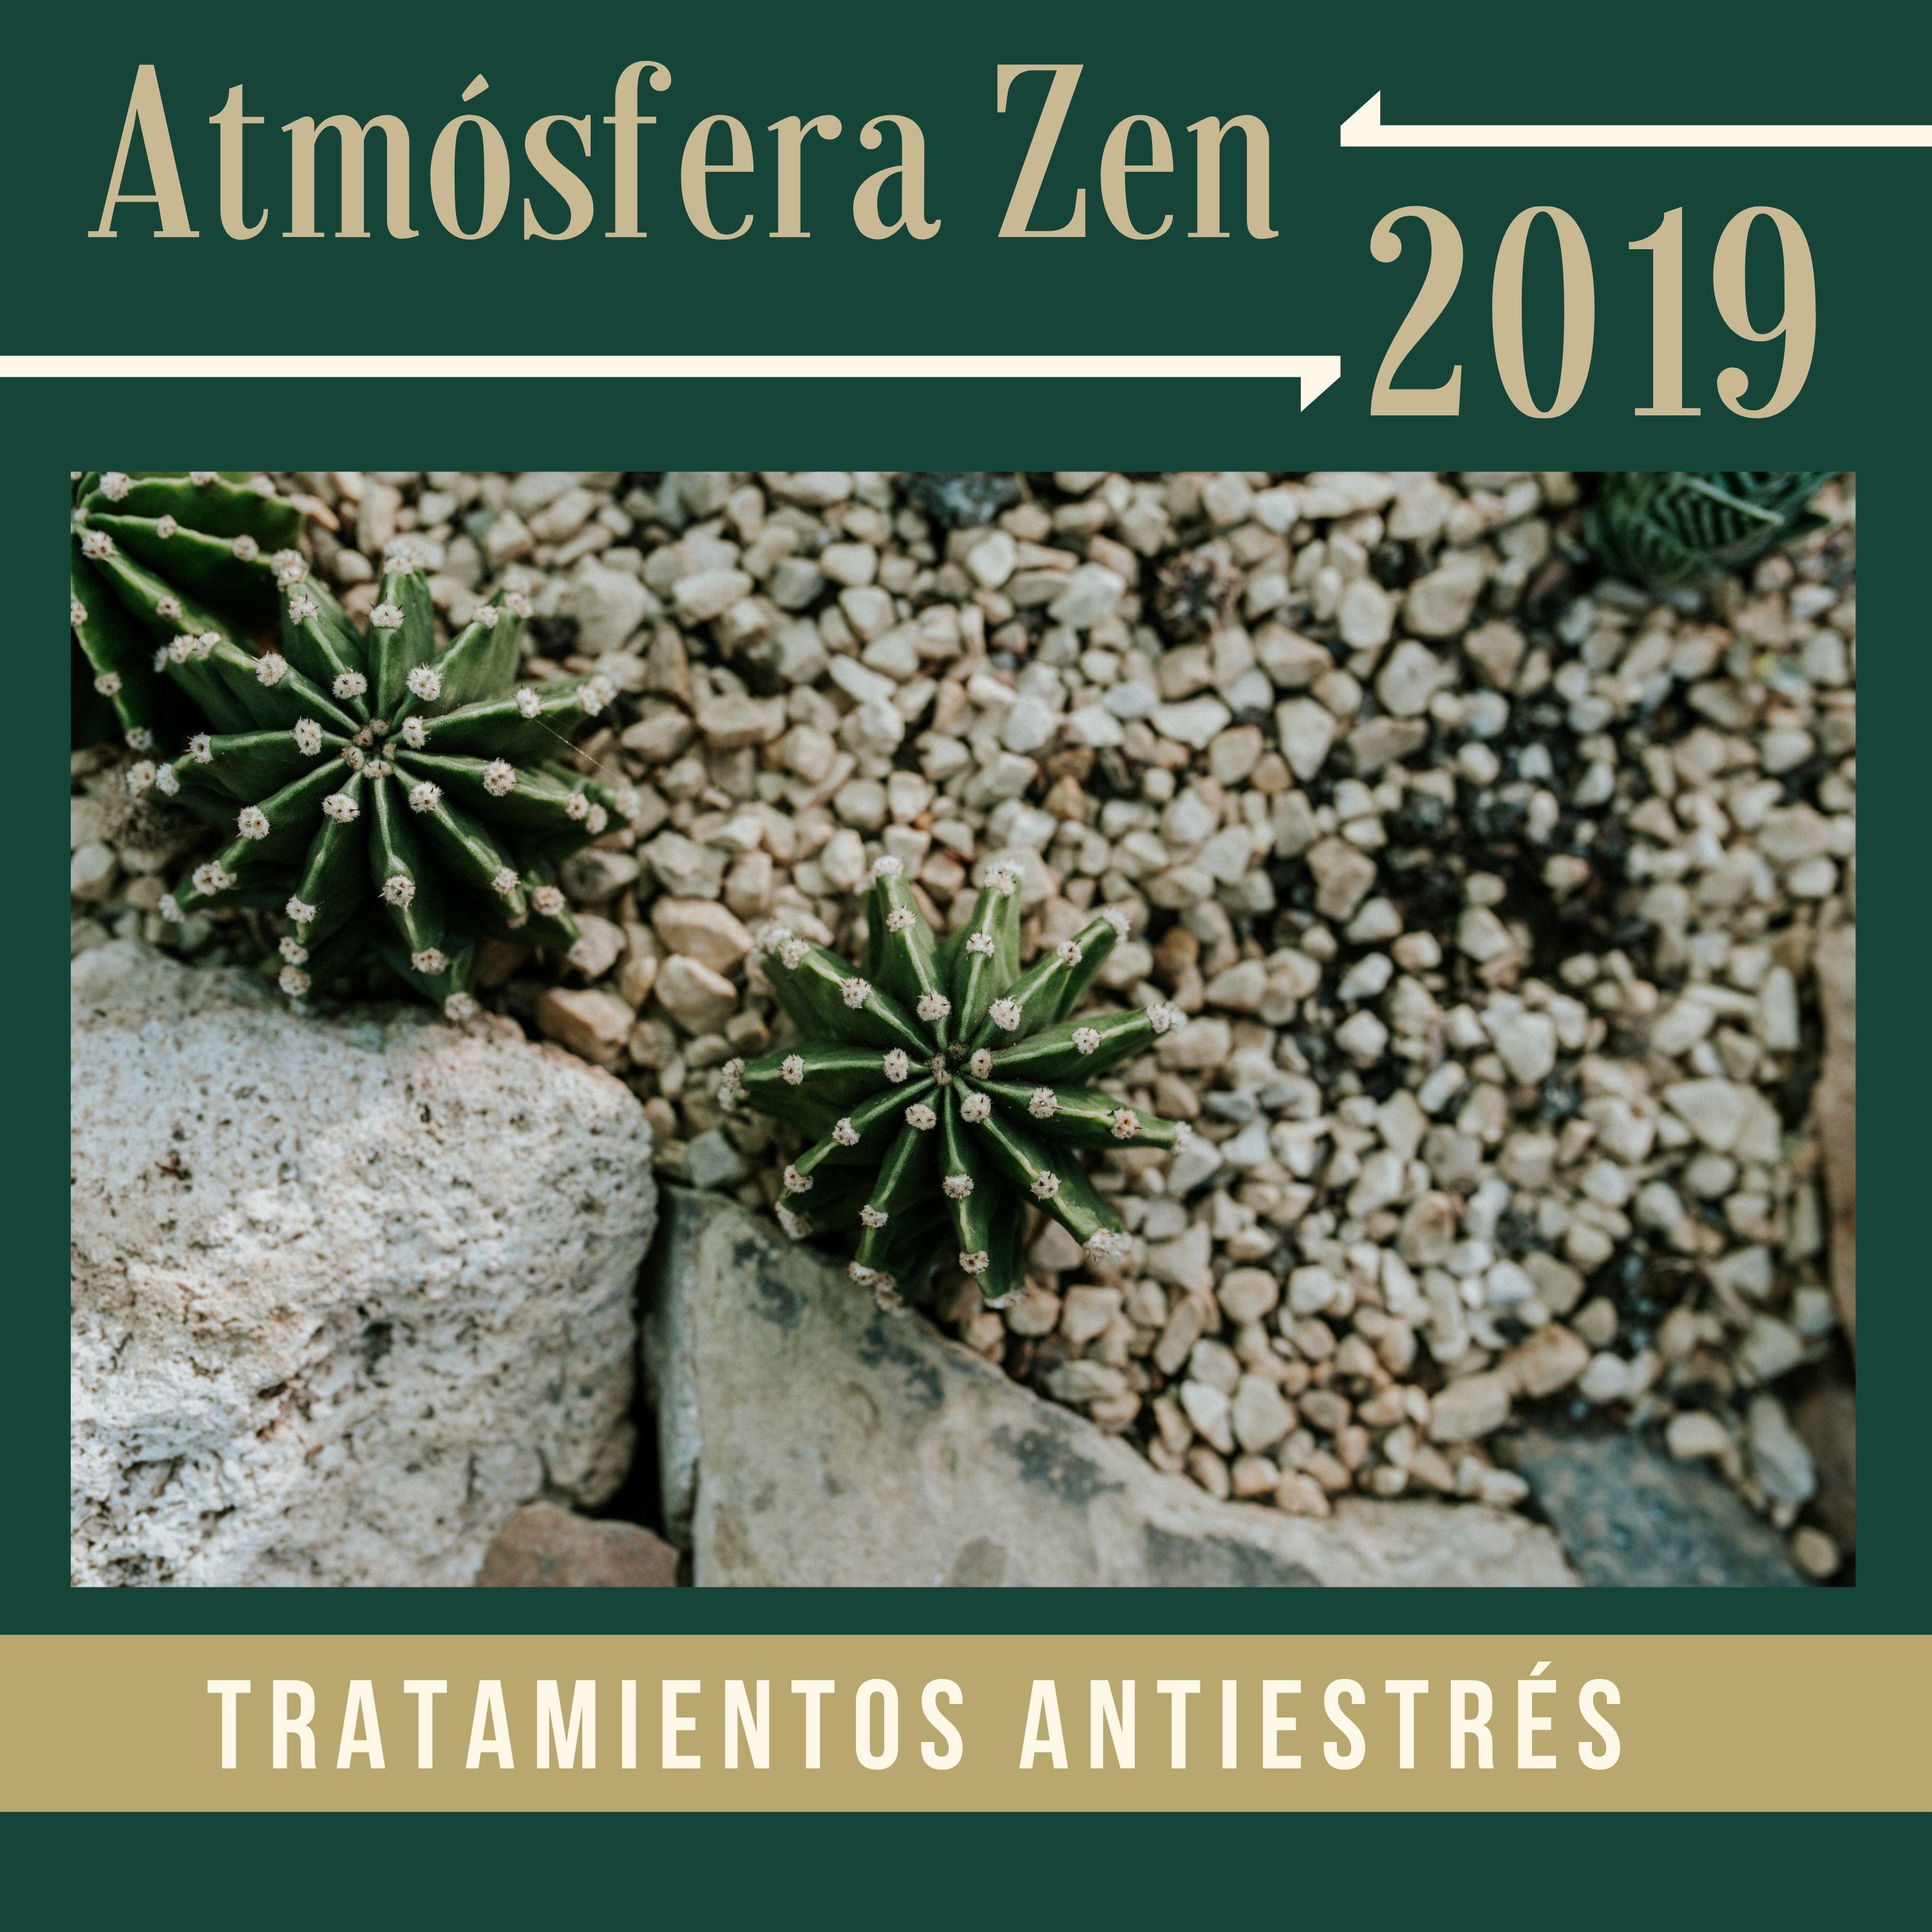 Atmo sfera Zen 2019  Tratamientos Antiestre s